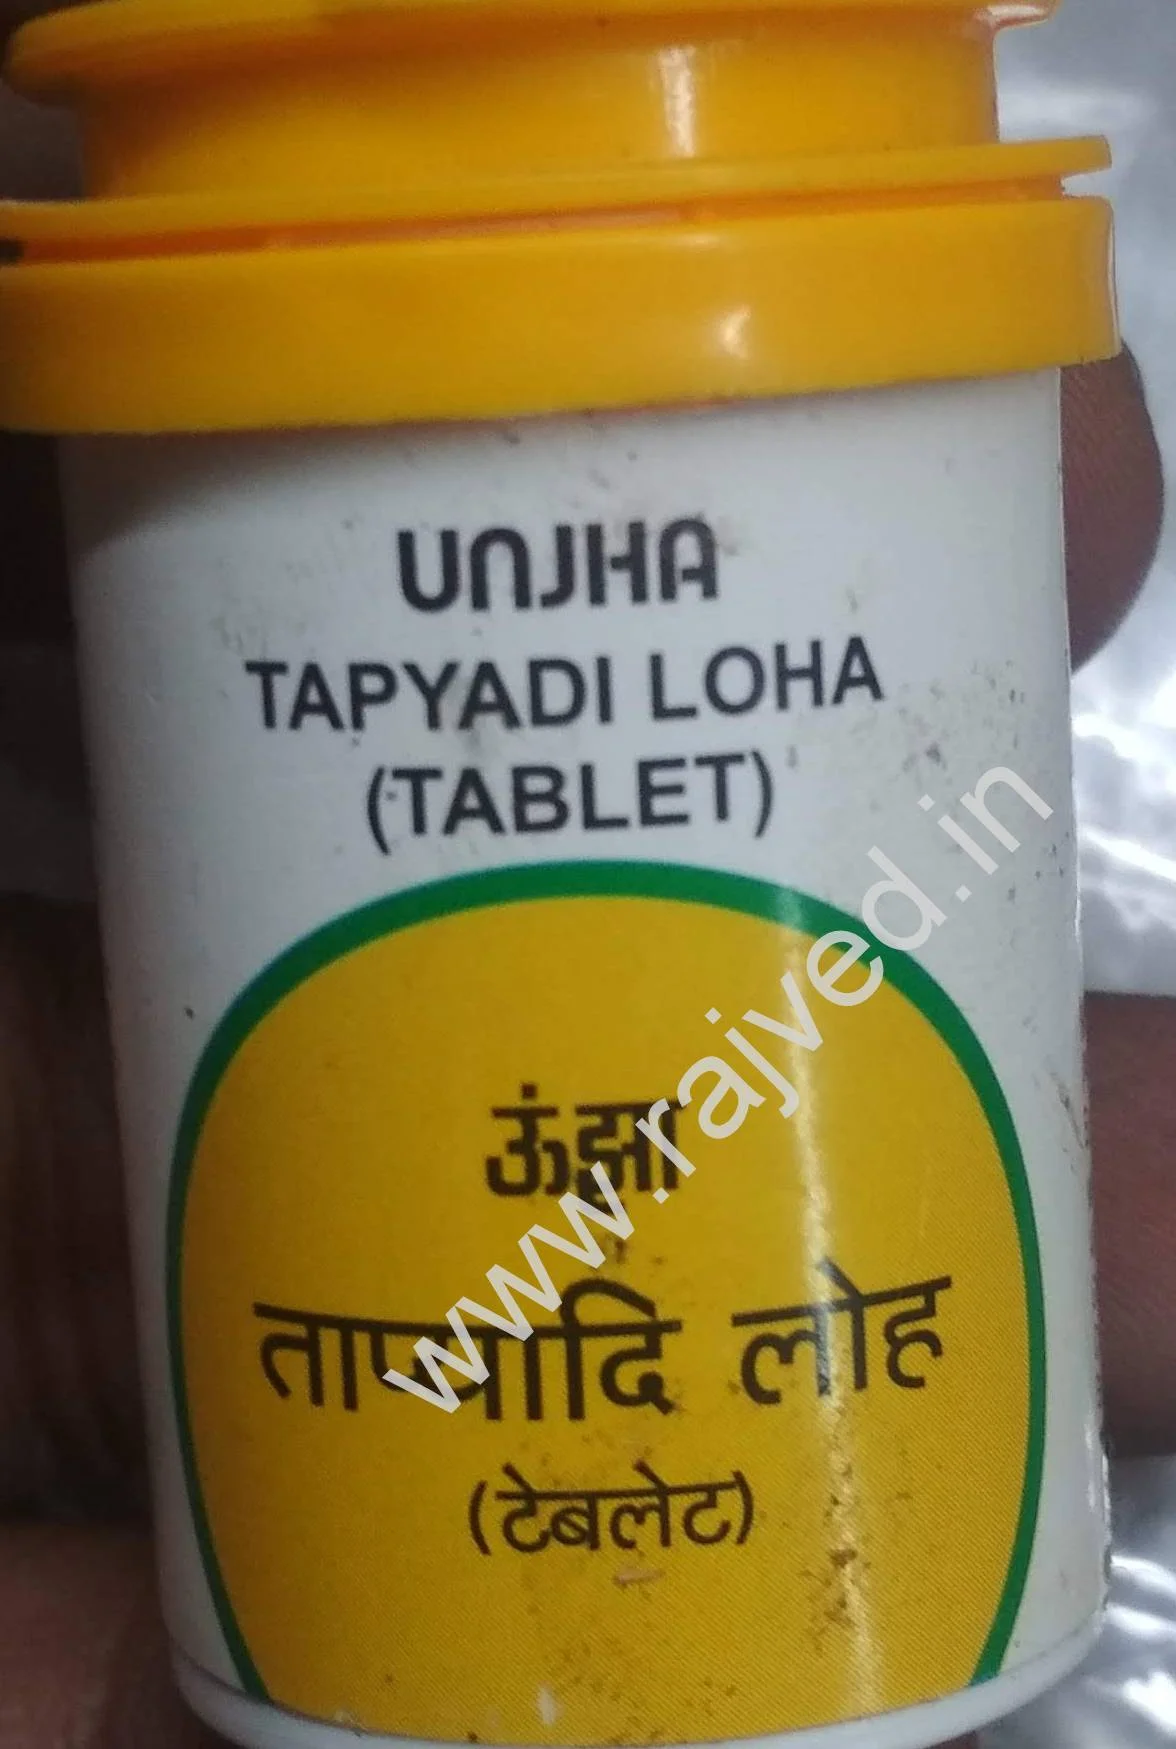 tapyadi loha 60 tablet upto 20% off the unjha pharmacy